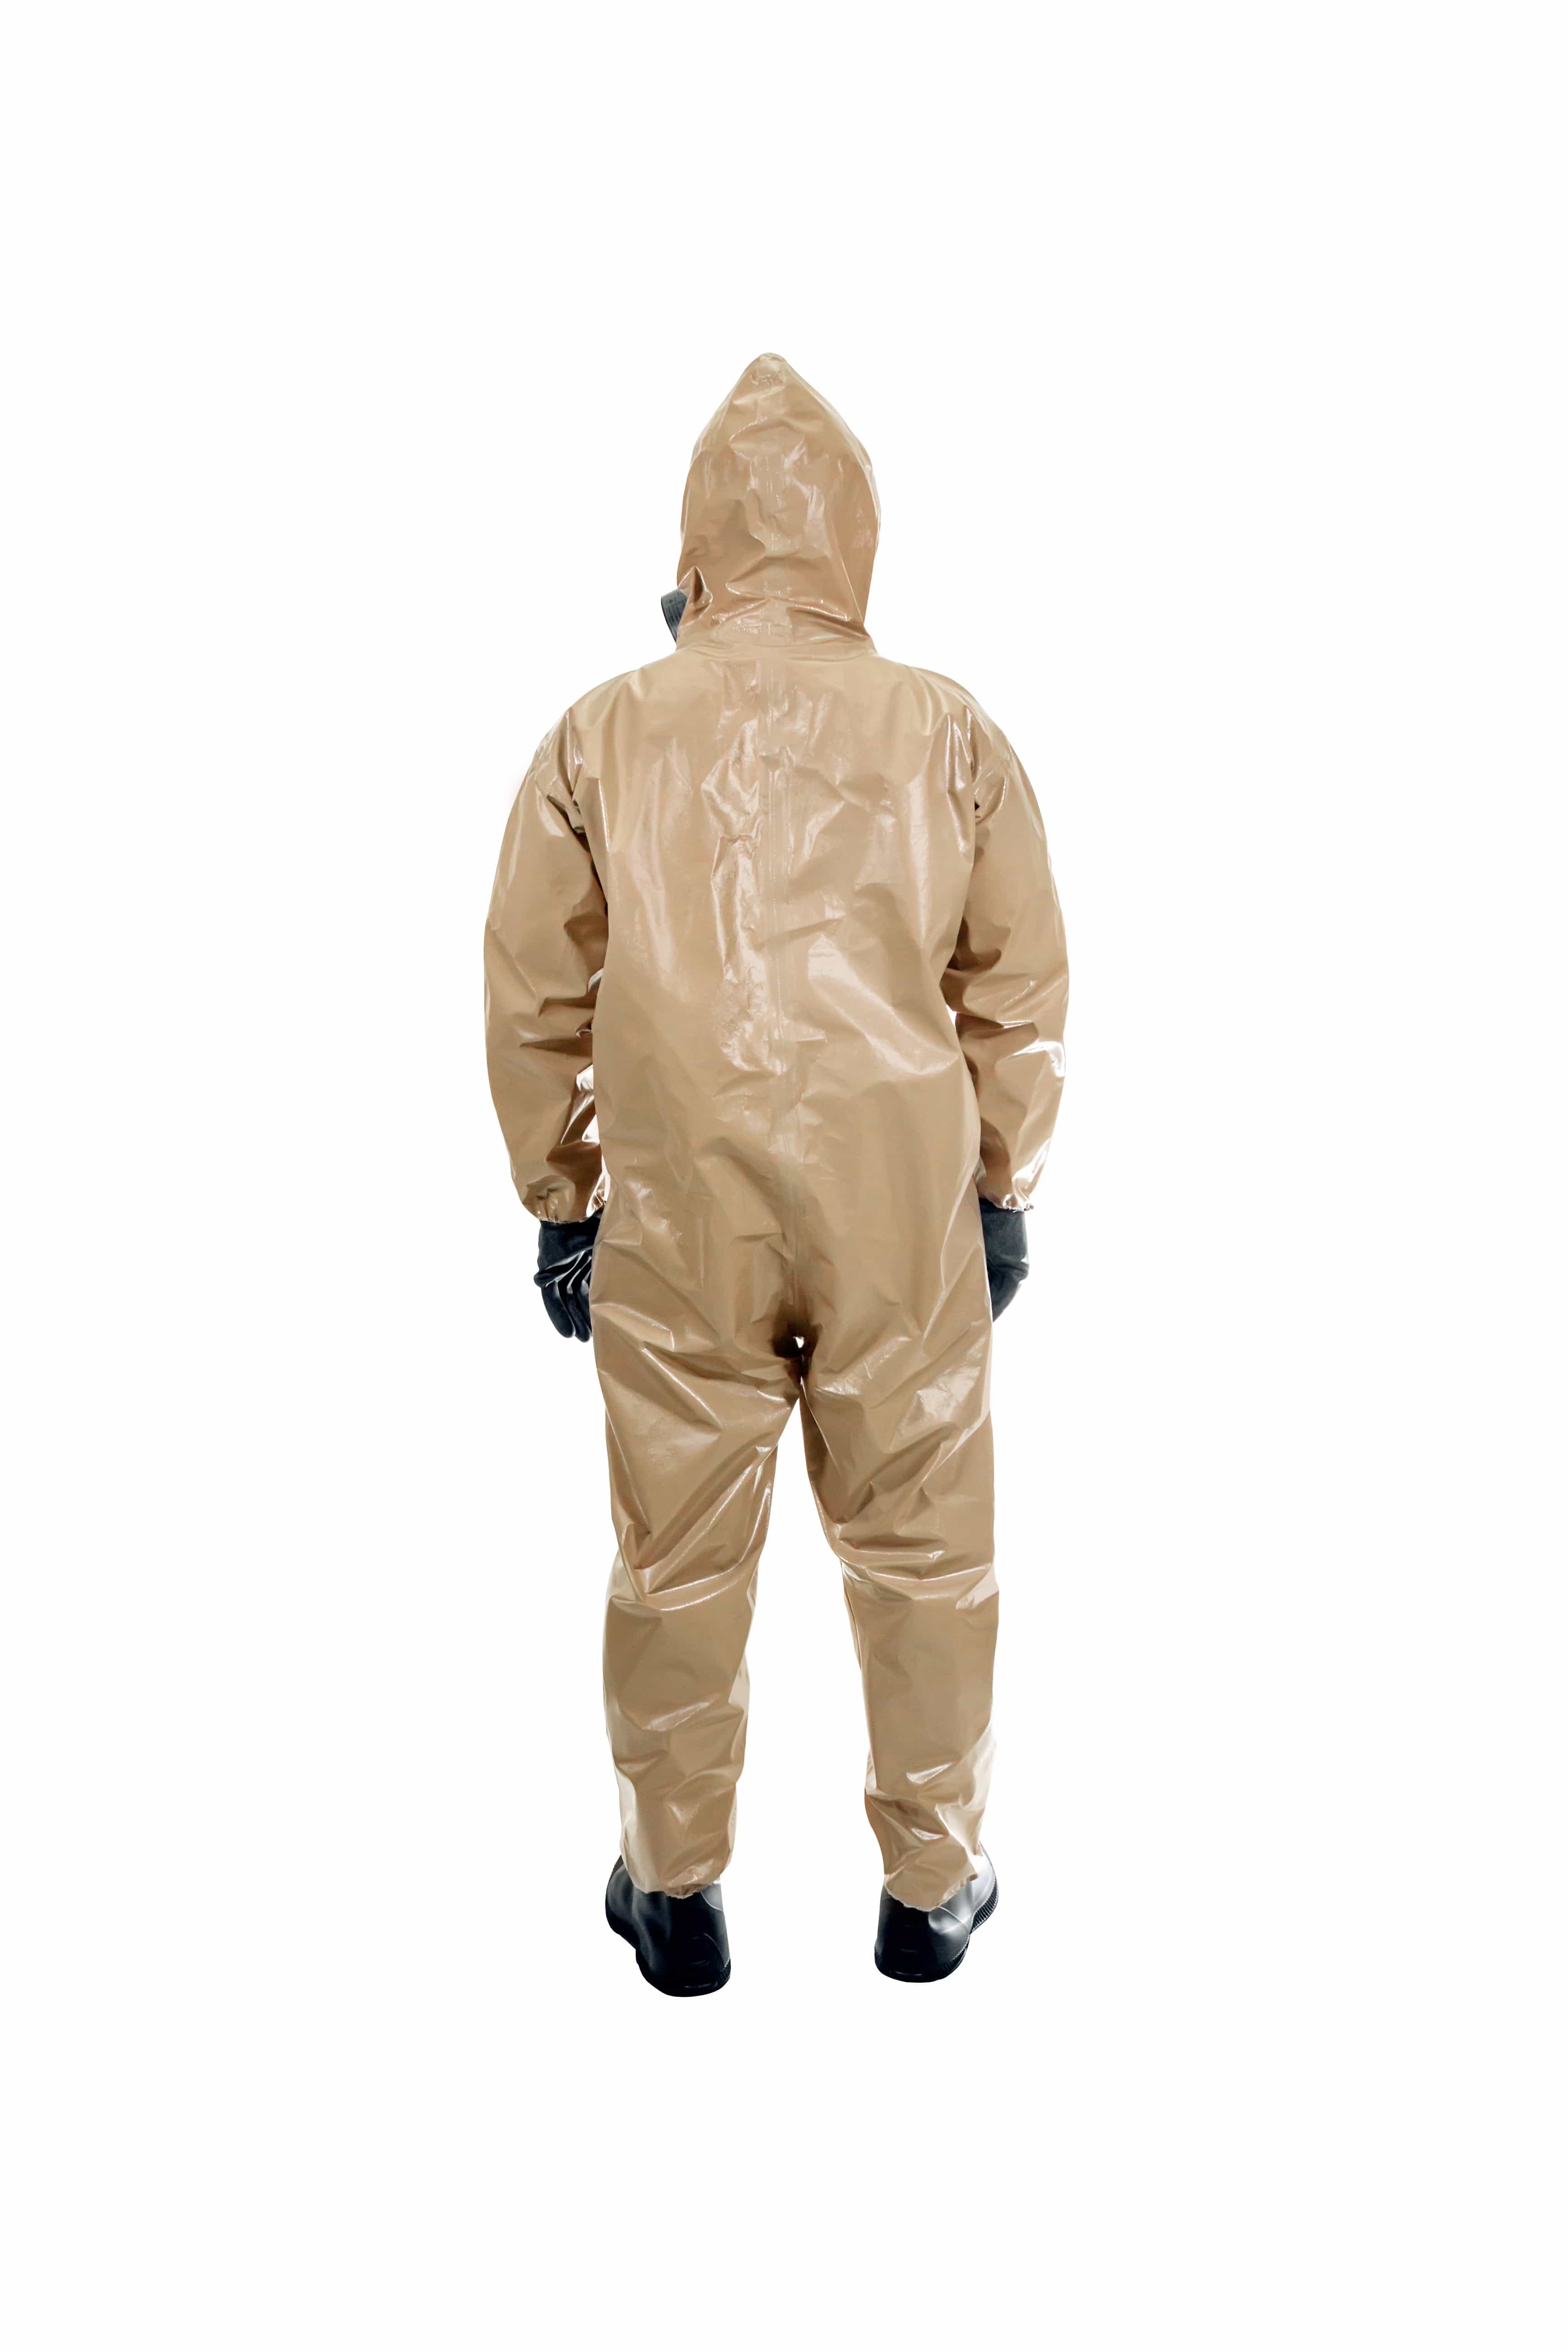 HAZMAT Suit - Chemical Protective CBRN HAZMAT Suit - Children to Adult Size - MIRA Safety